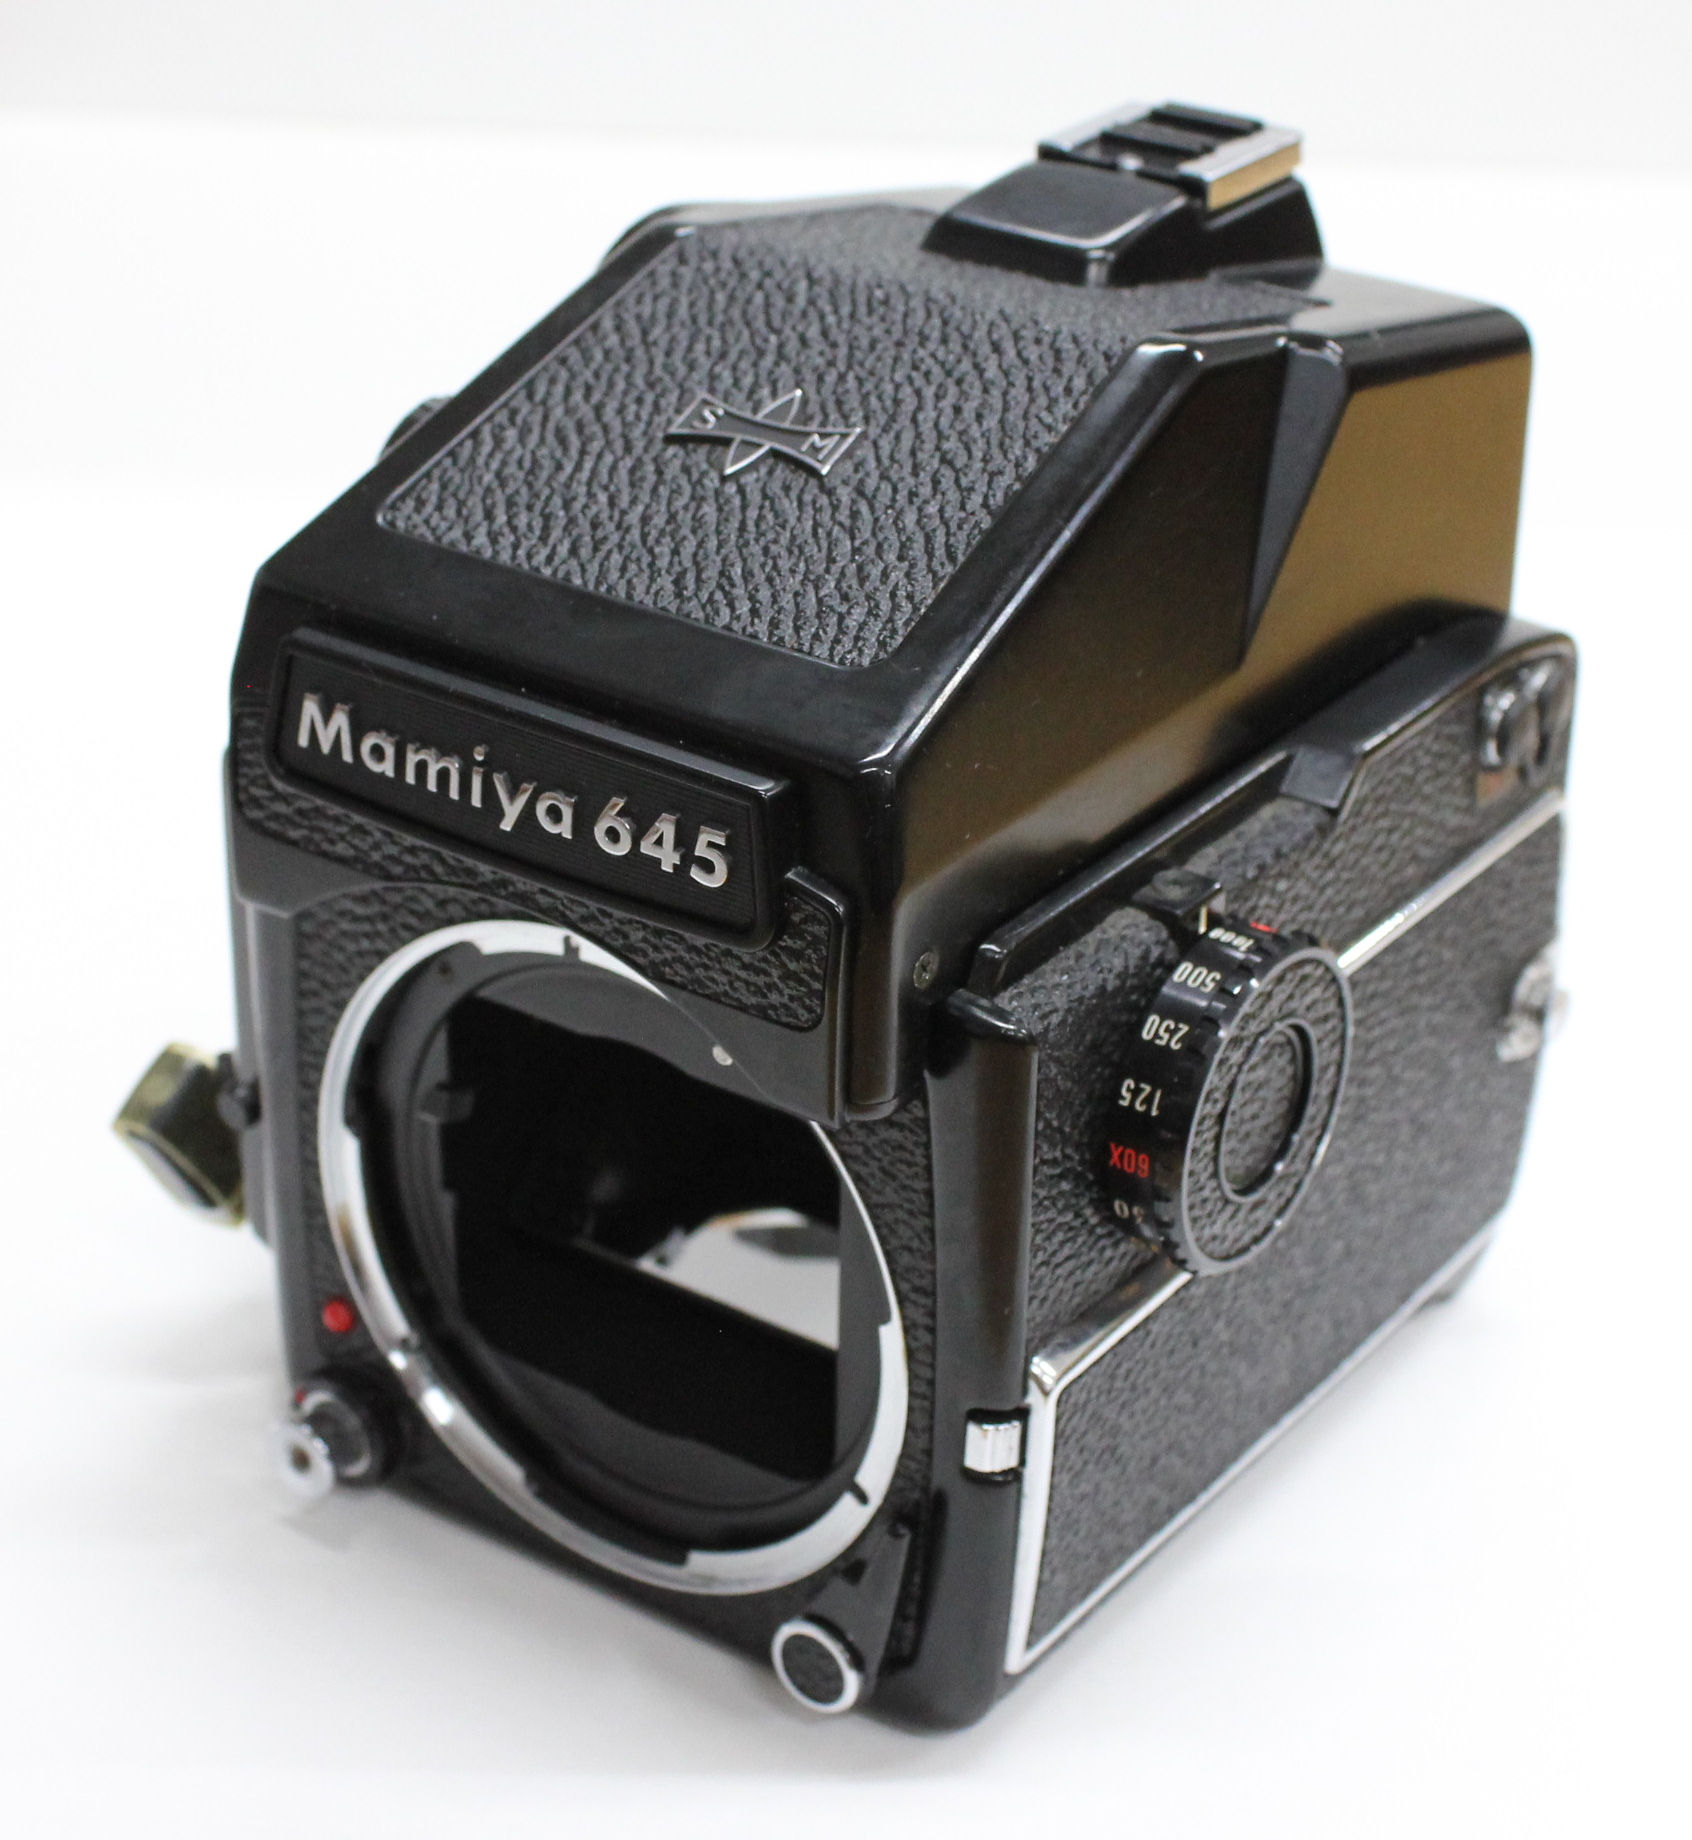 [Excellent +++] Mamiya M645 1000S Medium Format Film Camera Body from Japan